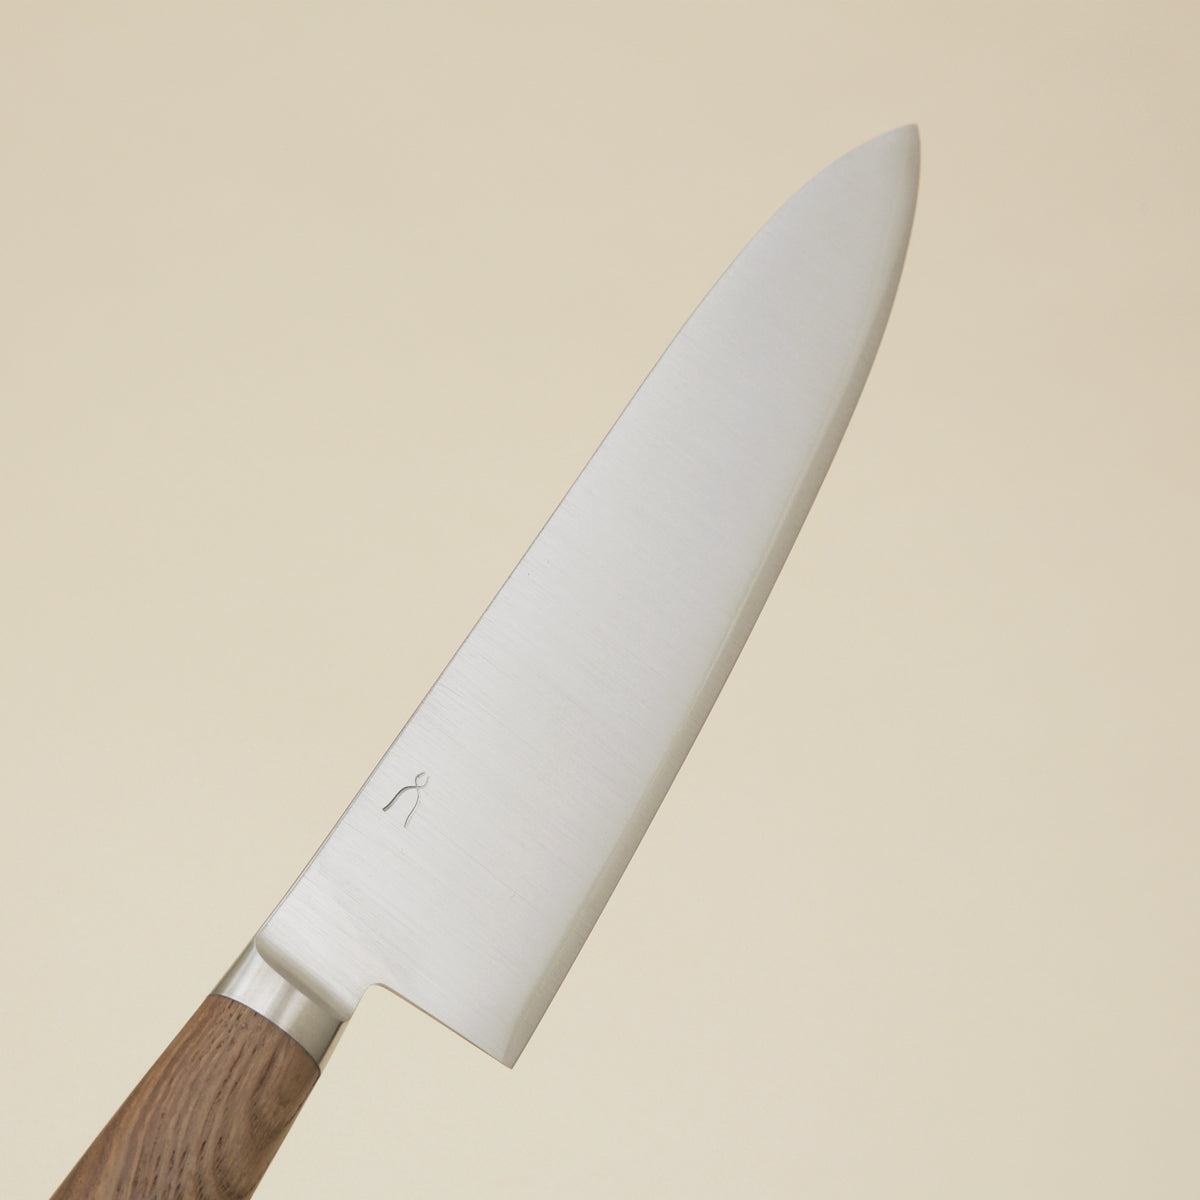 Long Chef's Knife - HK4